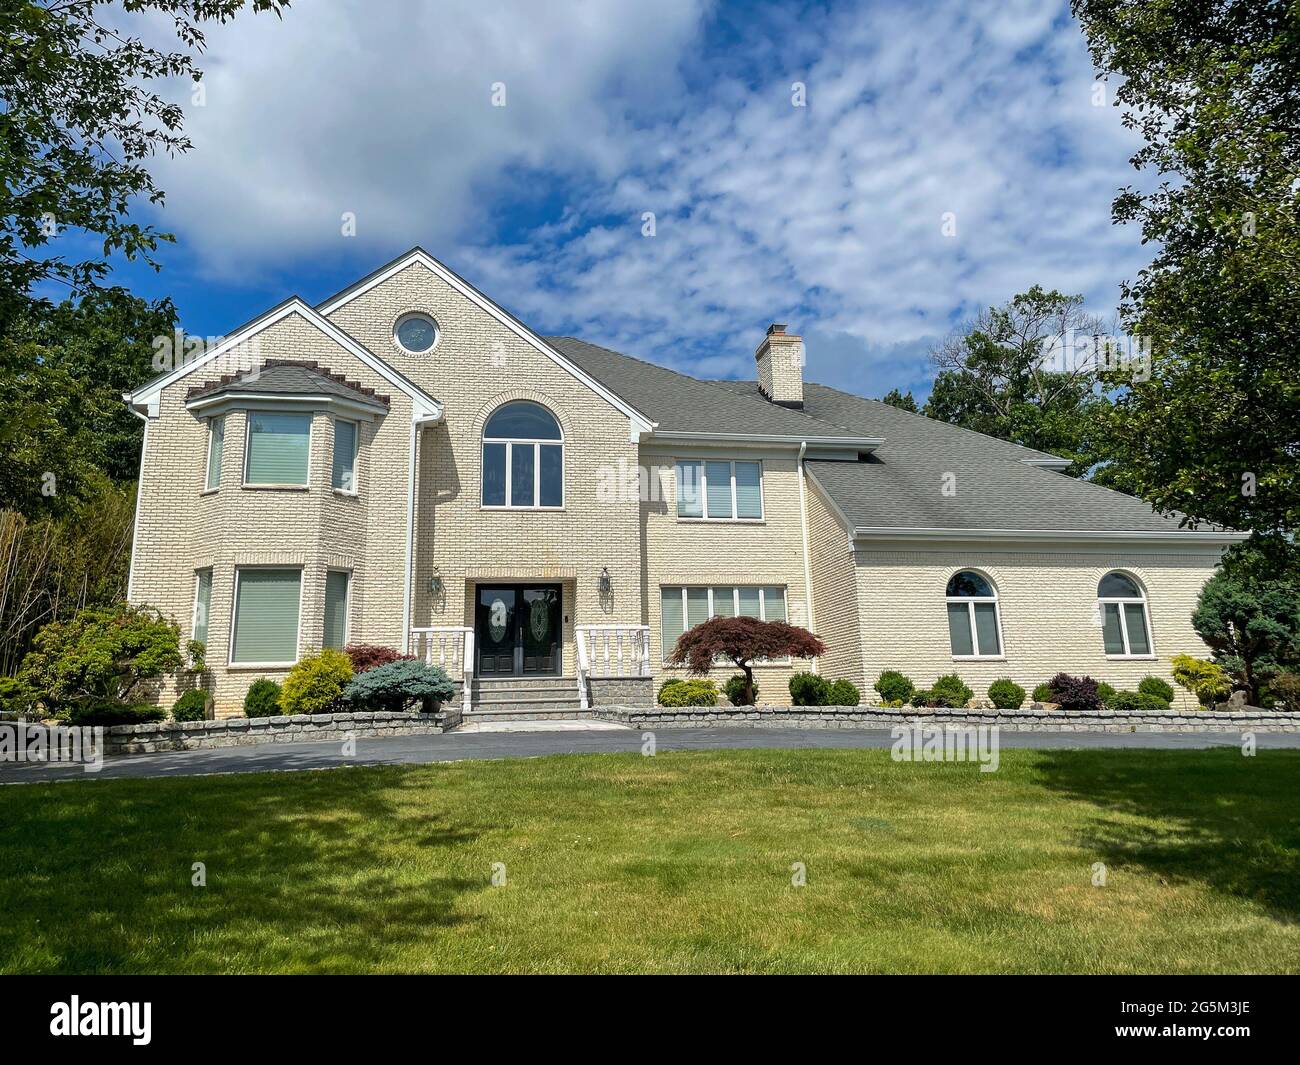 Singola casa suburbana famiglia fatta di mattoni chiari in un quartiere ricco in New Jersey. Foto Stock